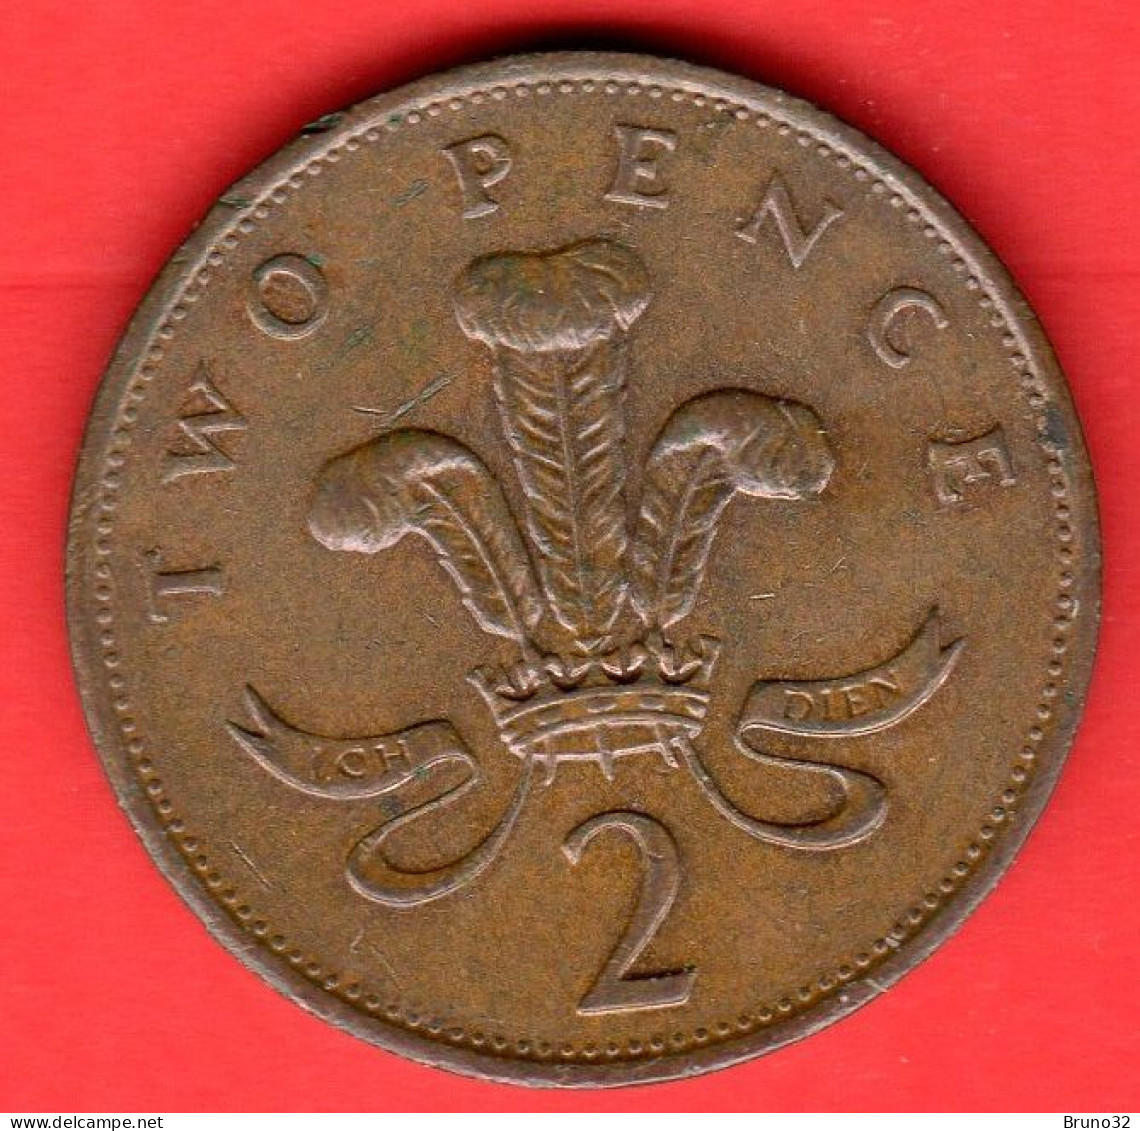 Gran Bretagna - Great Britain - GB - 2 Pence - 1988 - QFDC/aUNC - Come Da Foto - 2 Pence & 2 New Pence